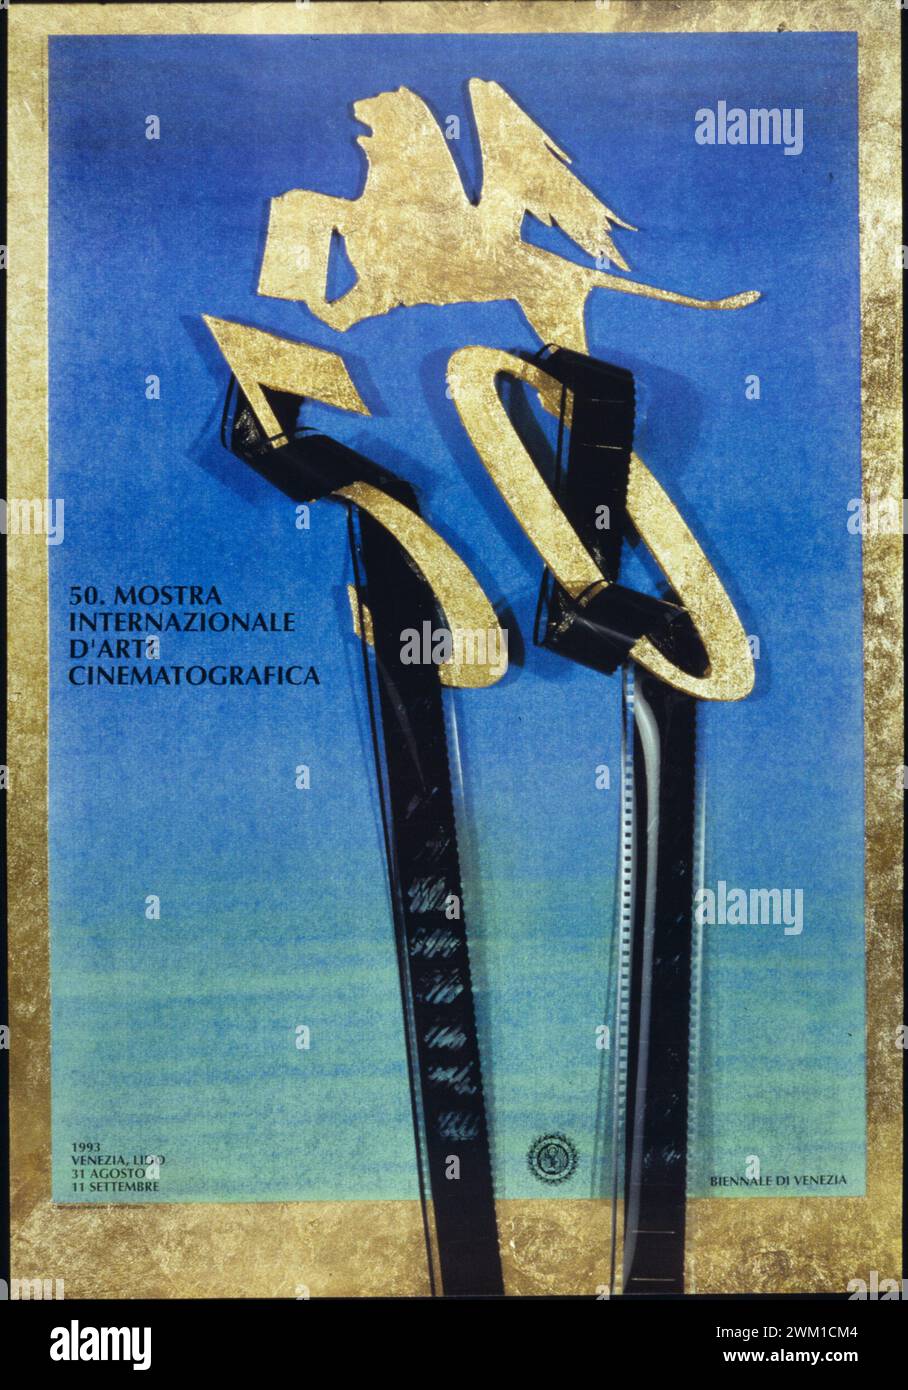 4067185 Venice Film Festival Posters / Manifesti della Mostra del Cinema di Venezia; (add.info.: Poster of Venice Film Festival 1993 / Manifesto della Mostra del Cinema di Venezia 1993 - Reproduced by Marcello Mencarini); © Marcello Mencarini. All rights reserved 2024. Stock Photo